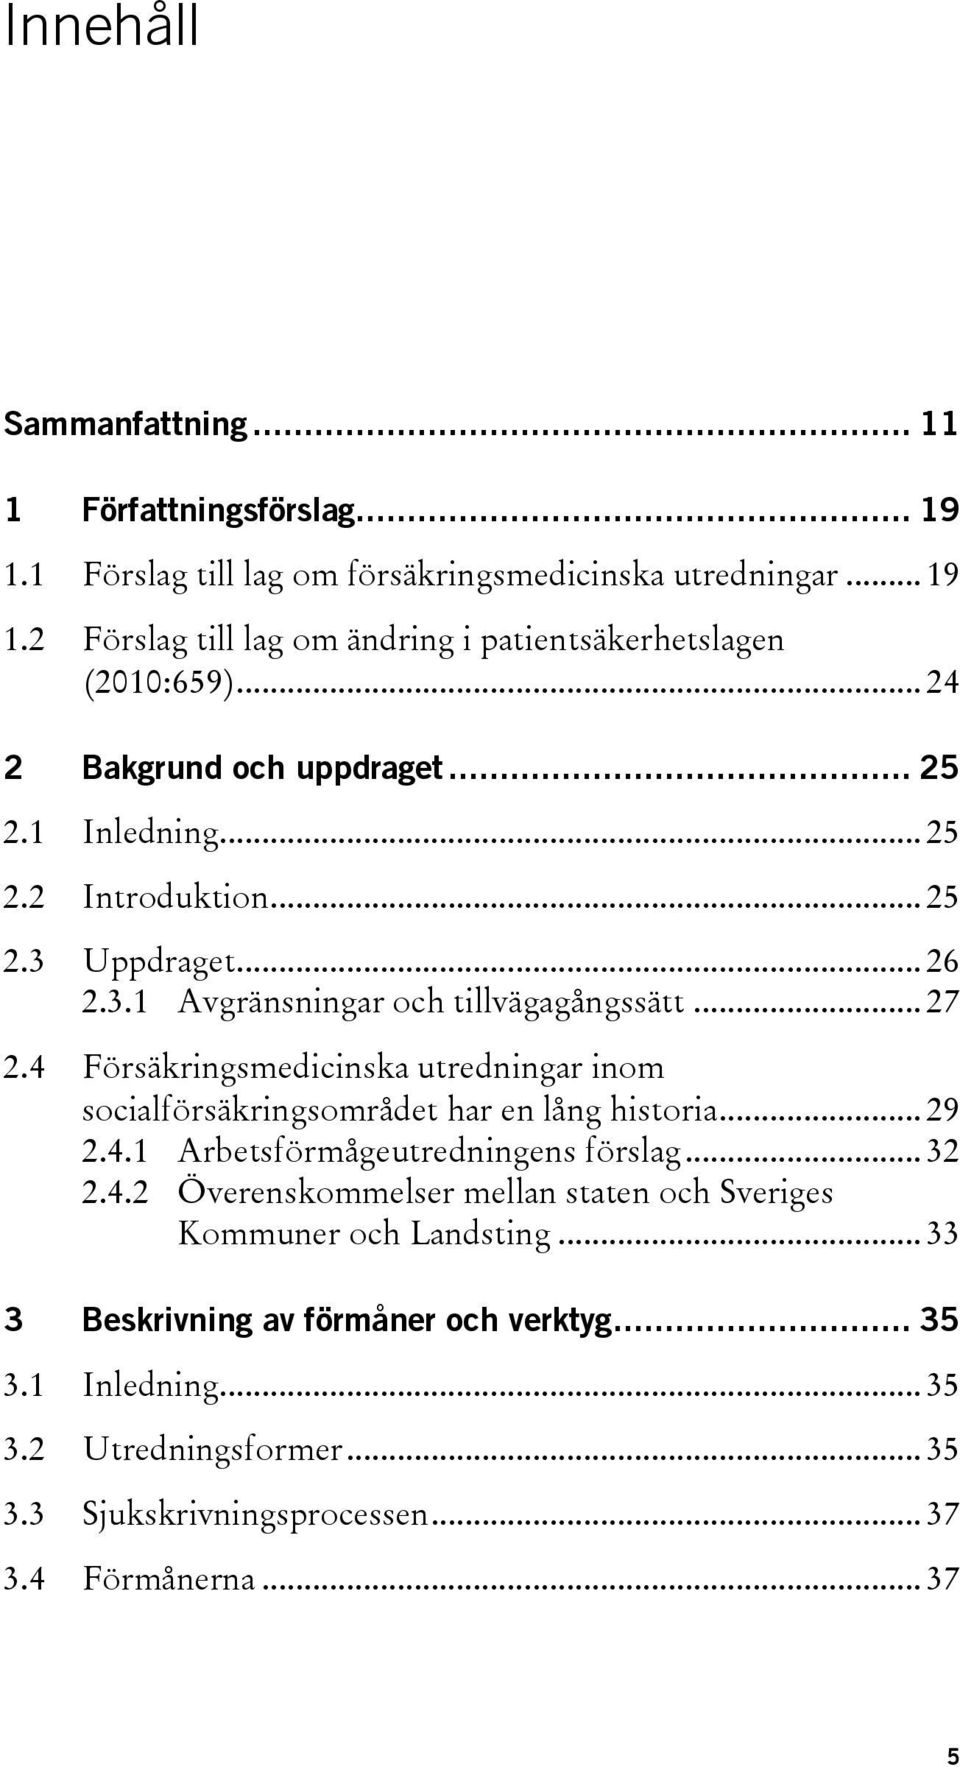 4 Försäkringsmedicinska utredningar inom socialförsäkringsområdet har en lång historia... 29 2.4.1 Arbetsförmågeutredningens förslag... 32 2.4.2 Överenskommelser mellan staten och Sveriges Kommuner och Landsting.